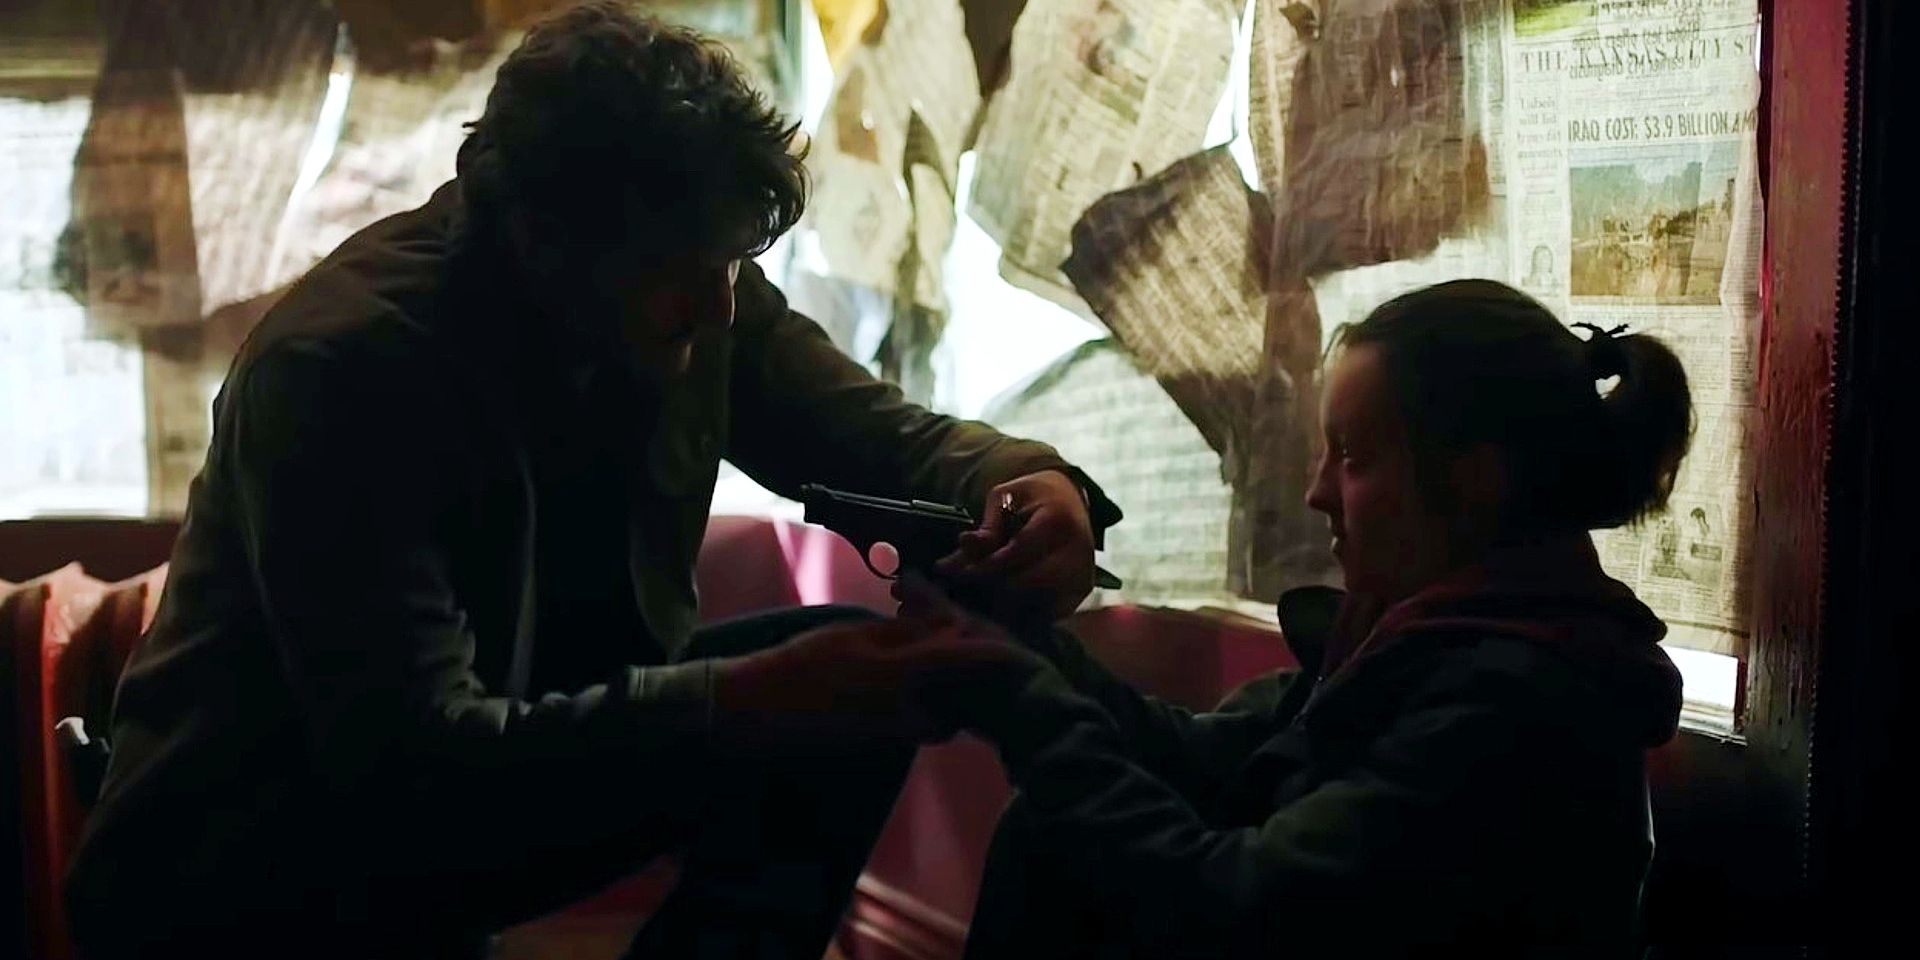 Joel handing Ellie a gun in The Last of Us